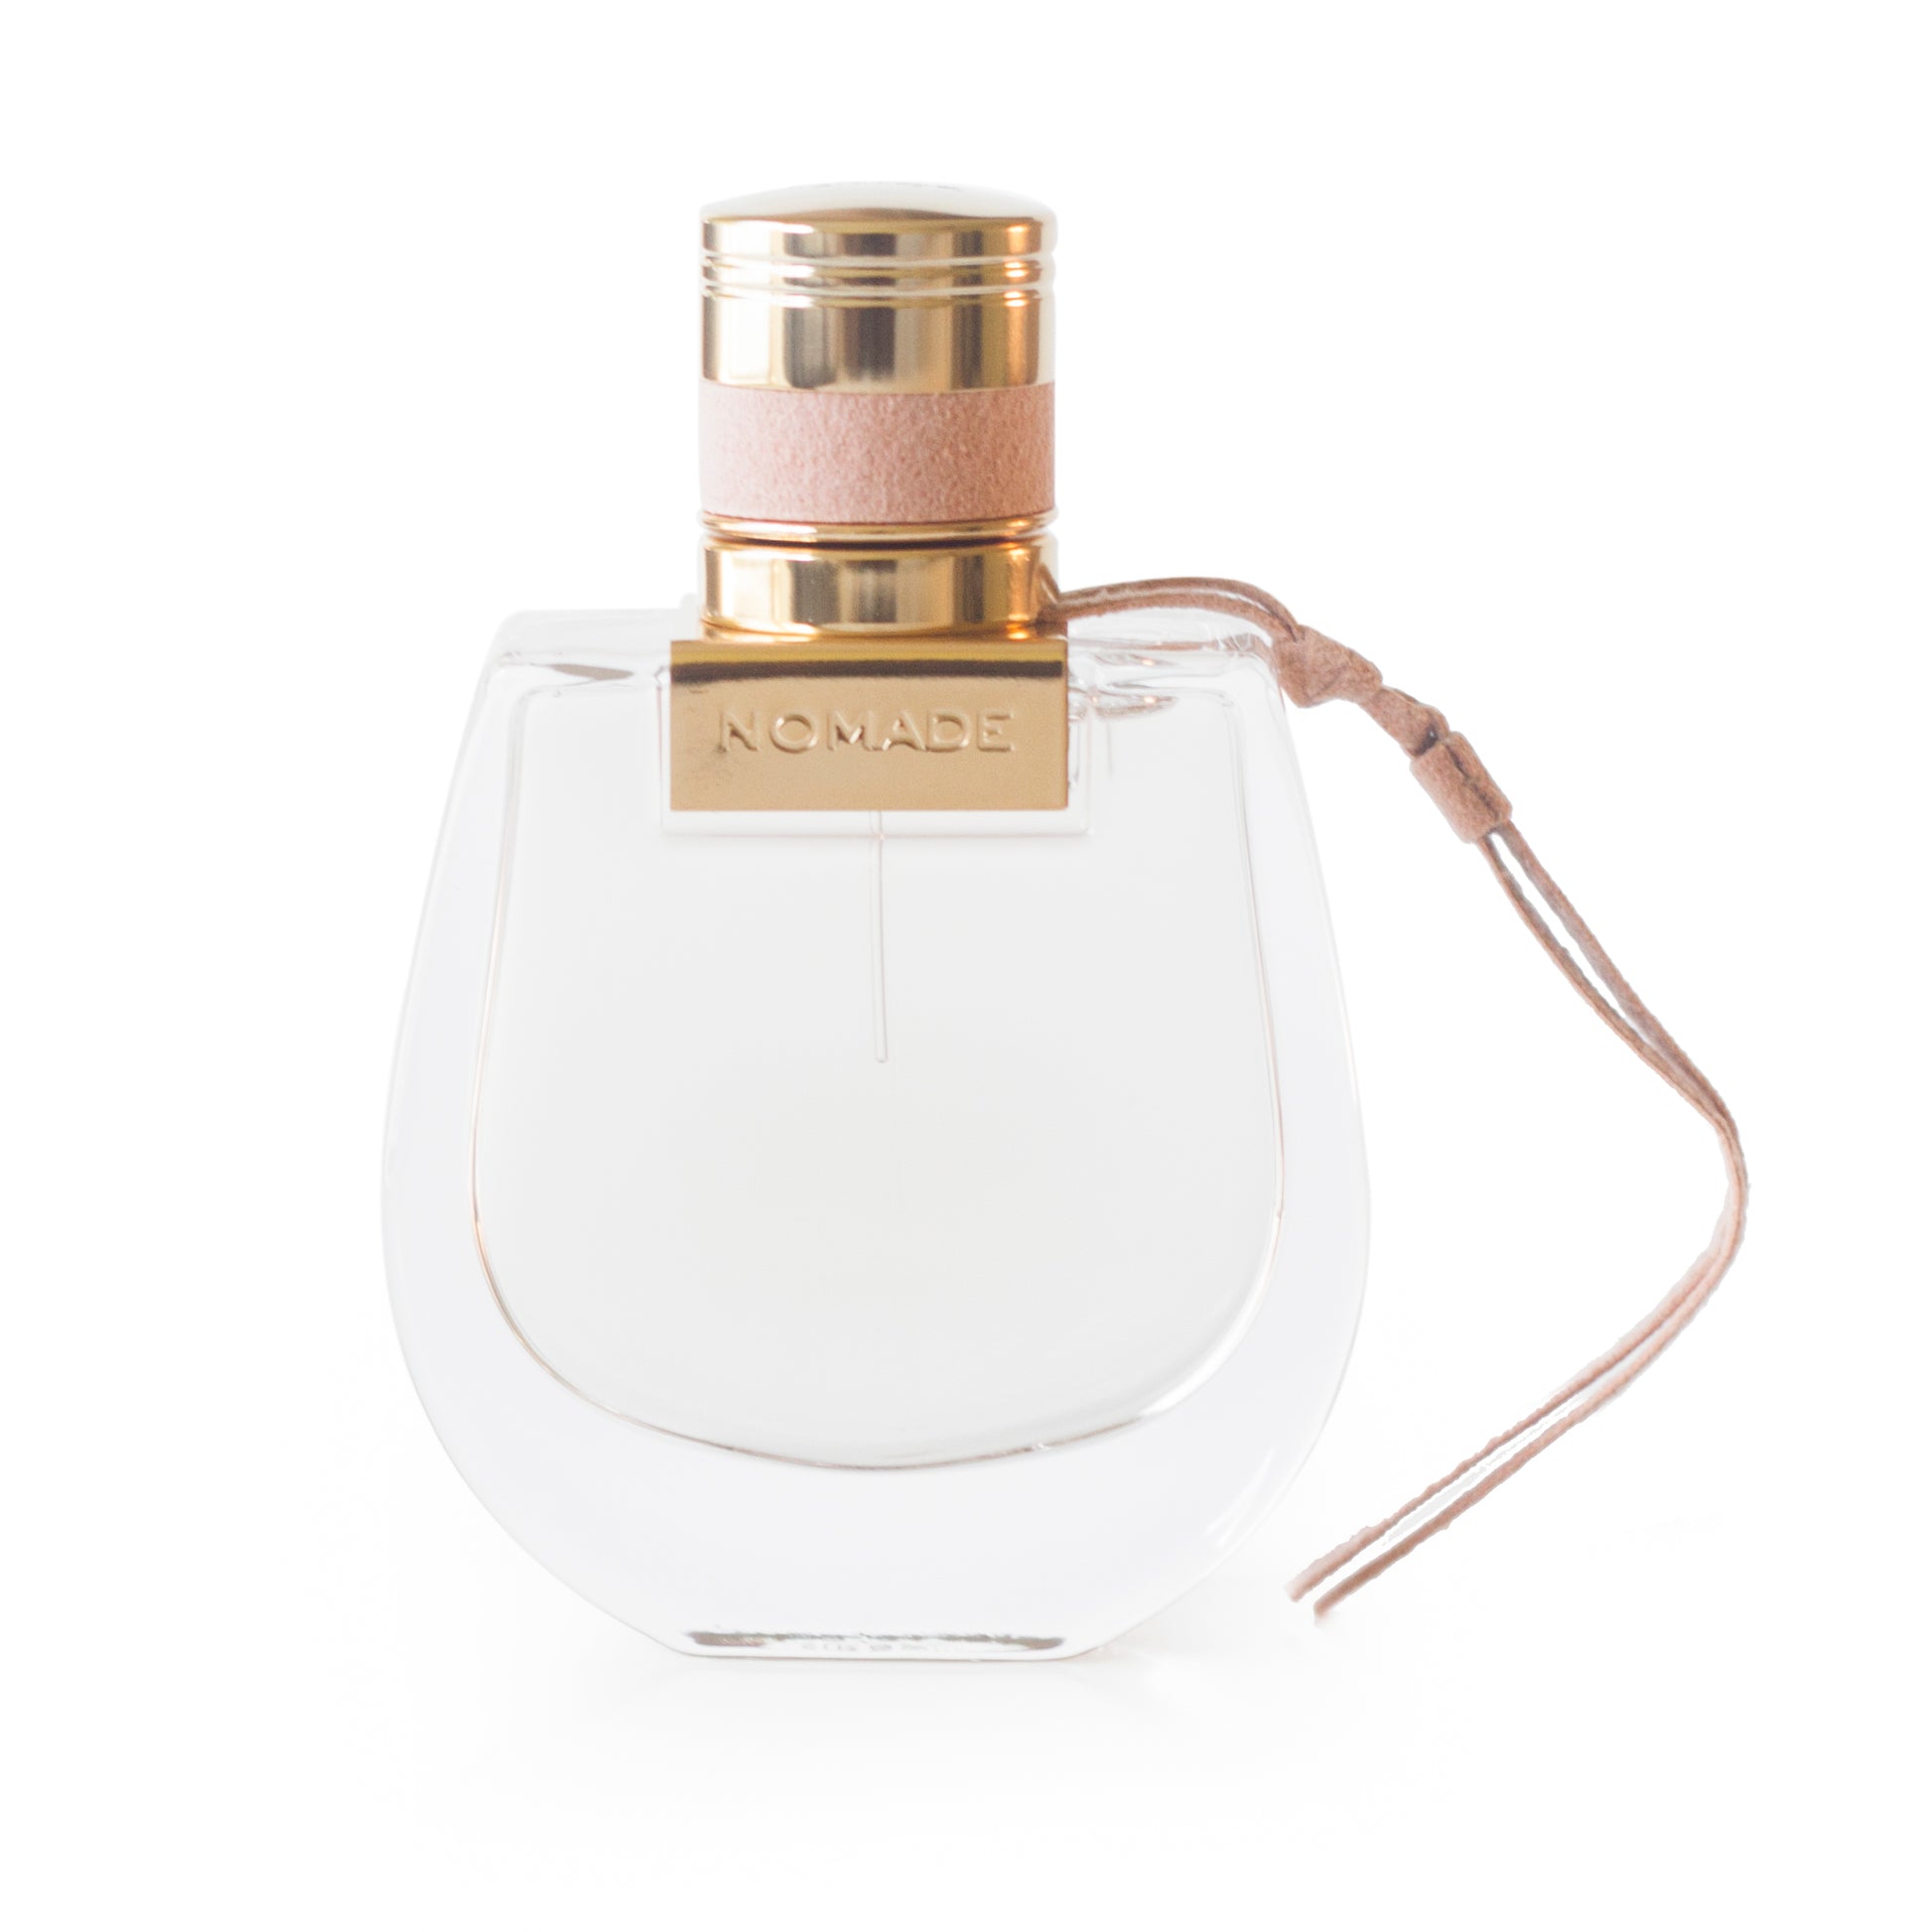 Nomade Eau de Parfum Spray for Women by Chloe 1.7 oz. Click to open in modal